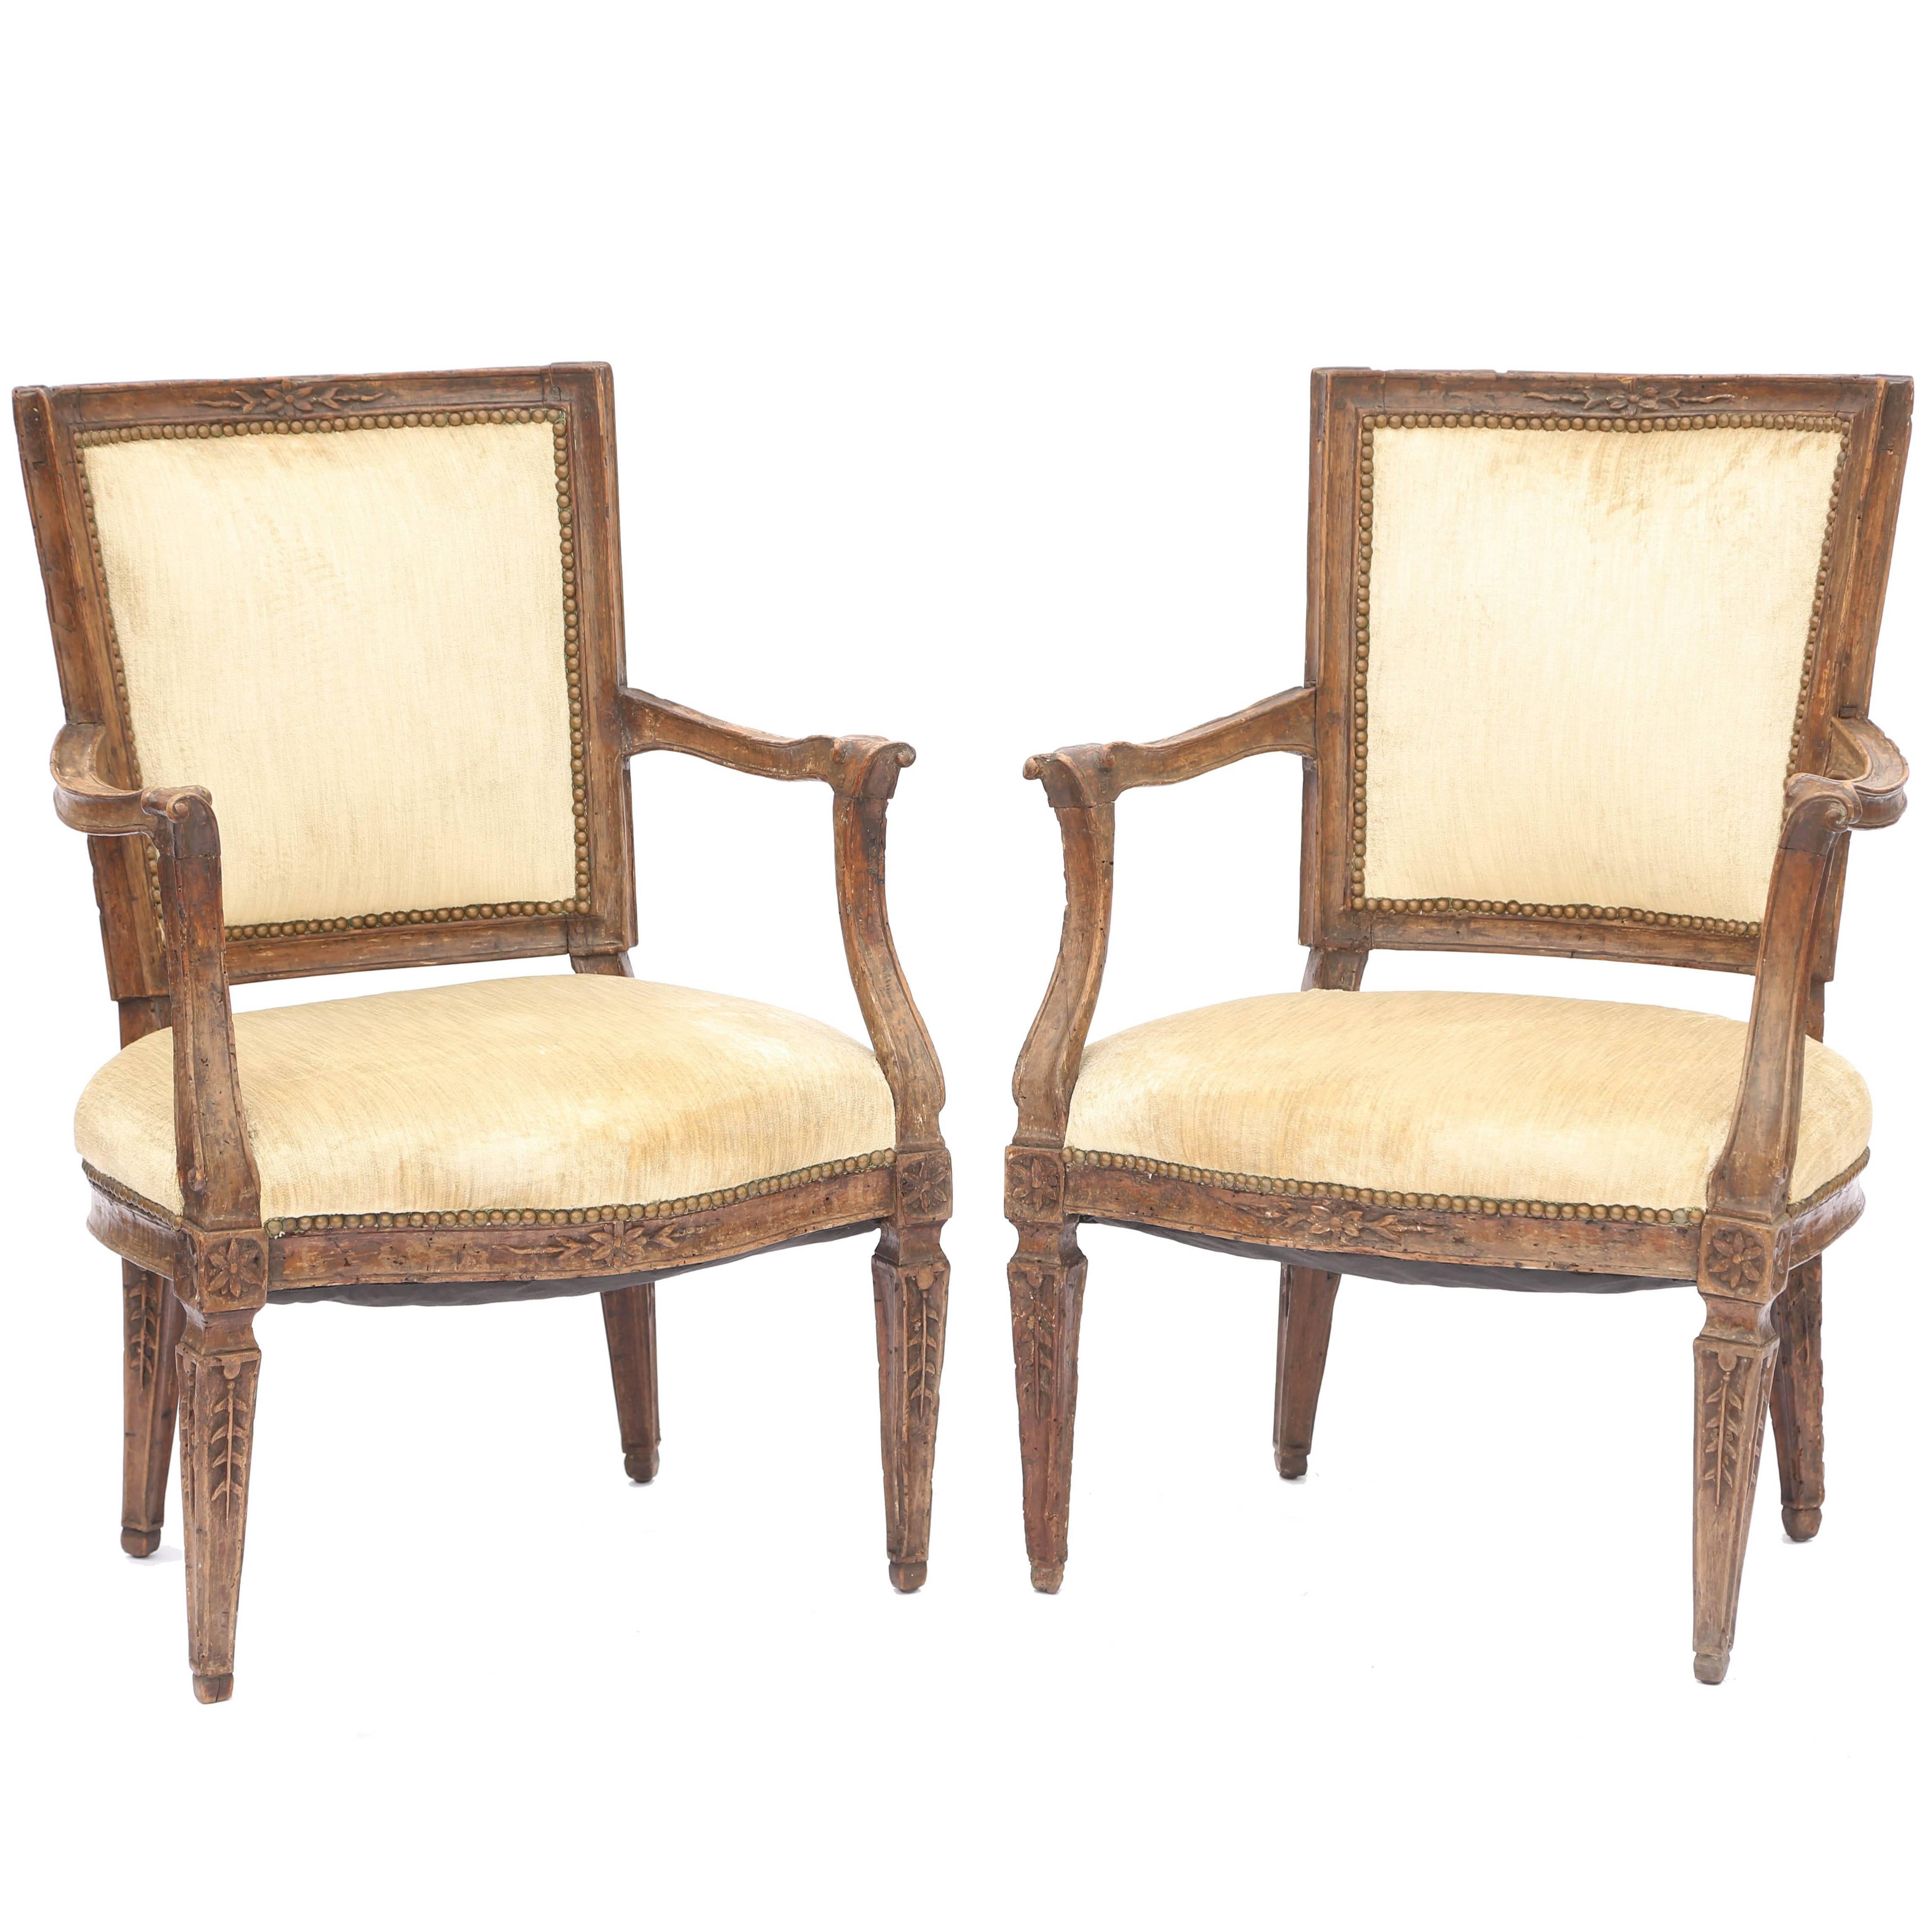 Paire de fauteuils italiens du XVIIIe siècle du XVIIIe siècle